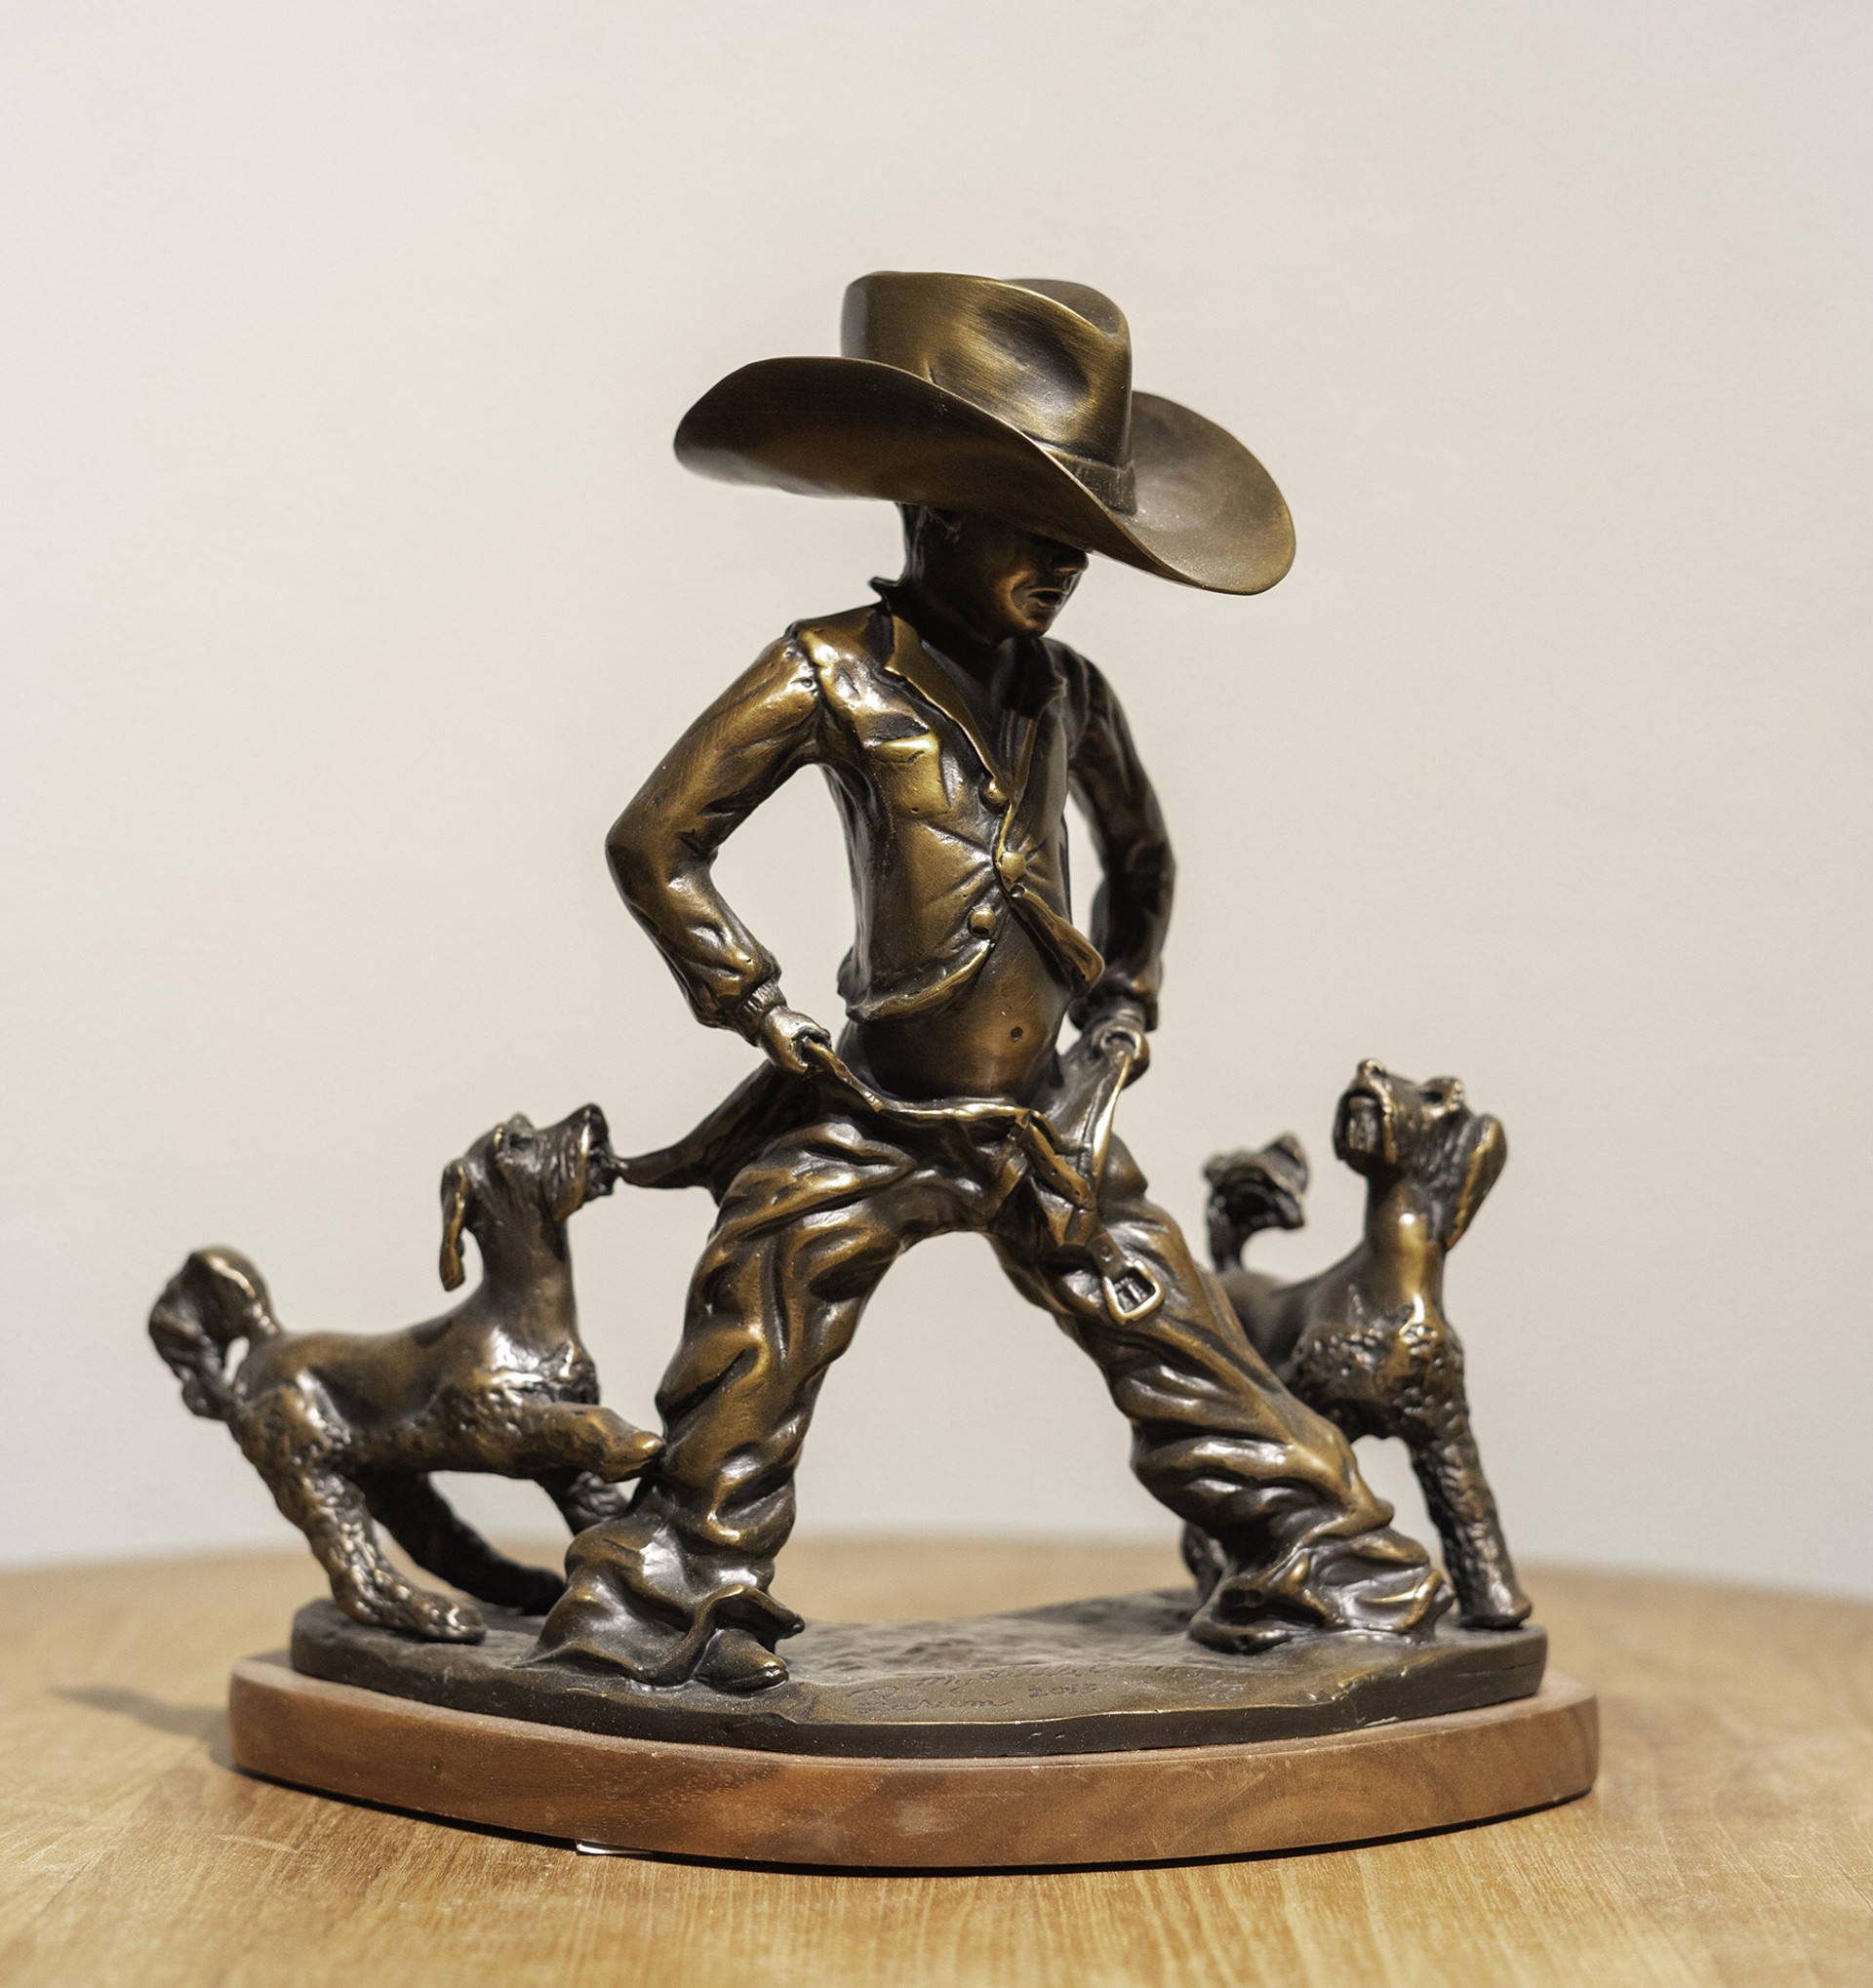 My Little Cowboy by Robert A. Larum (sculptor)